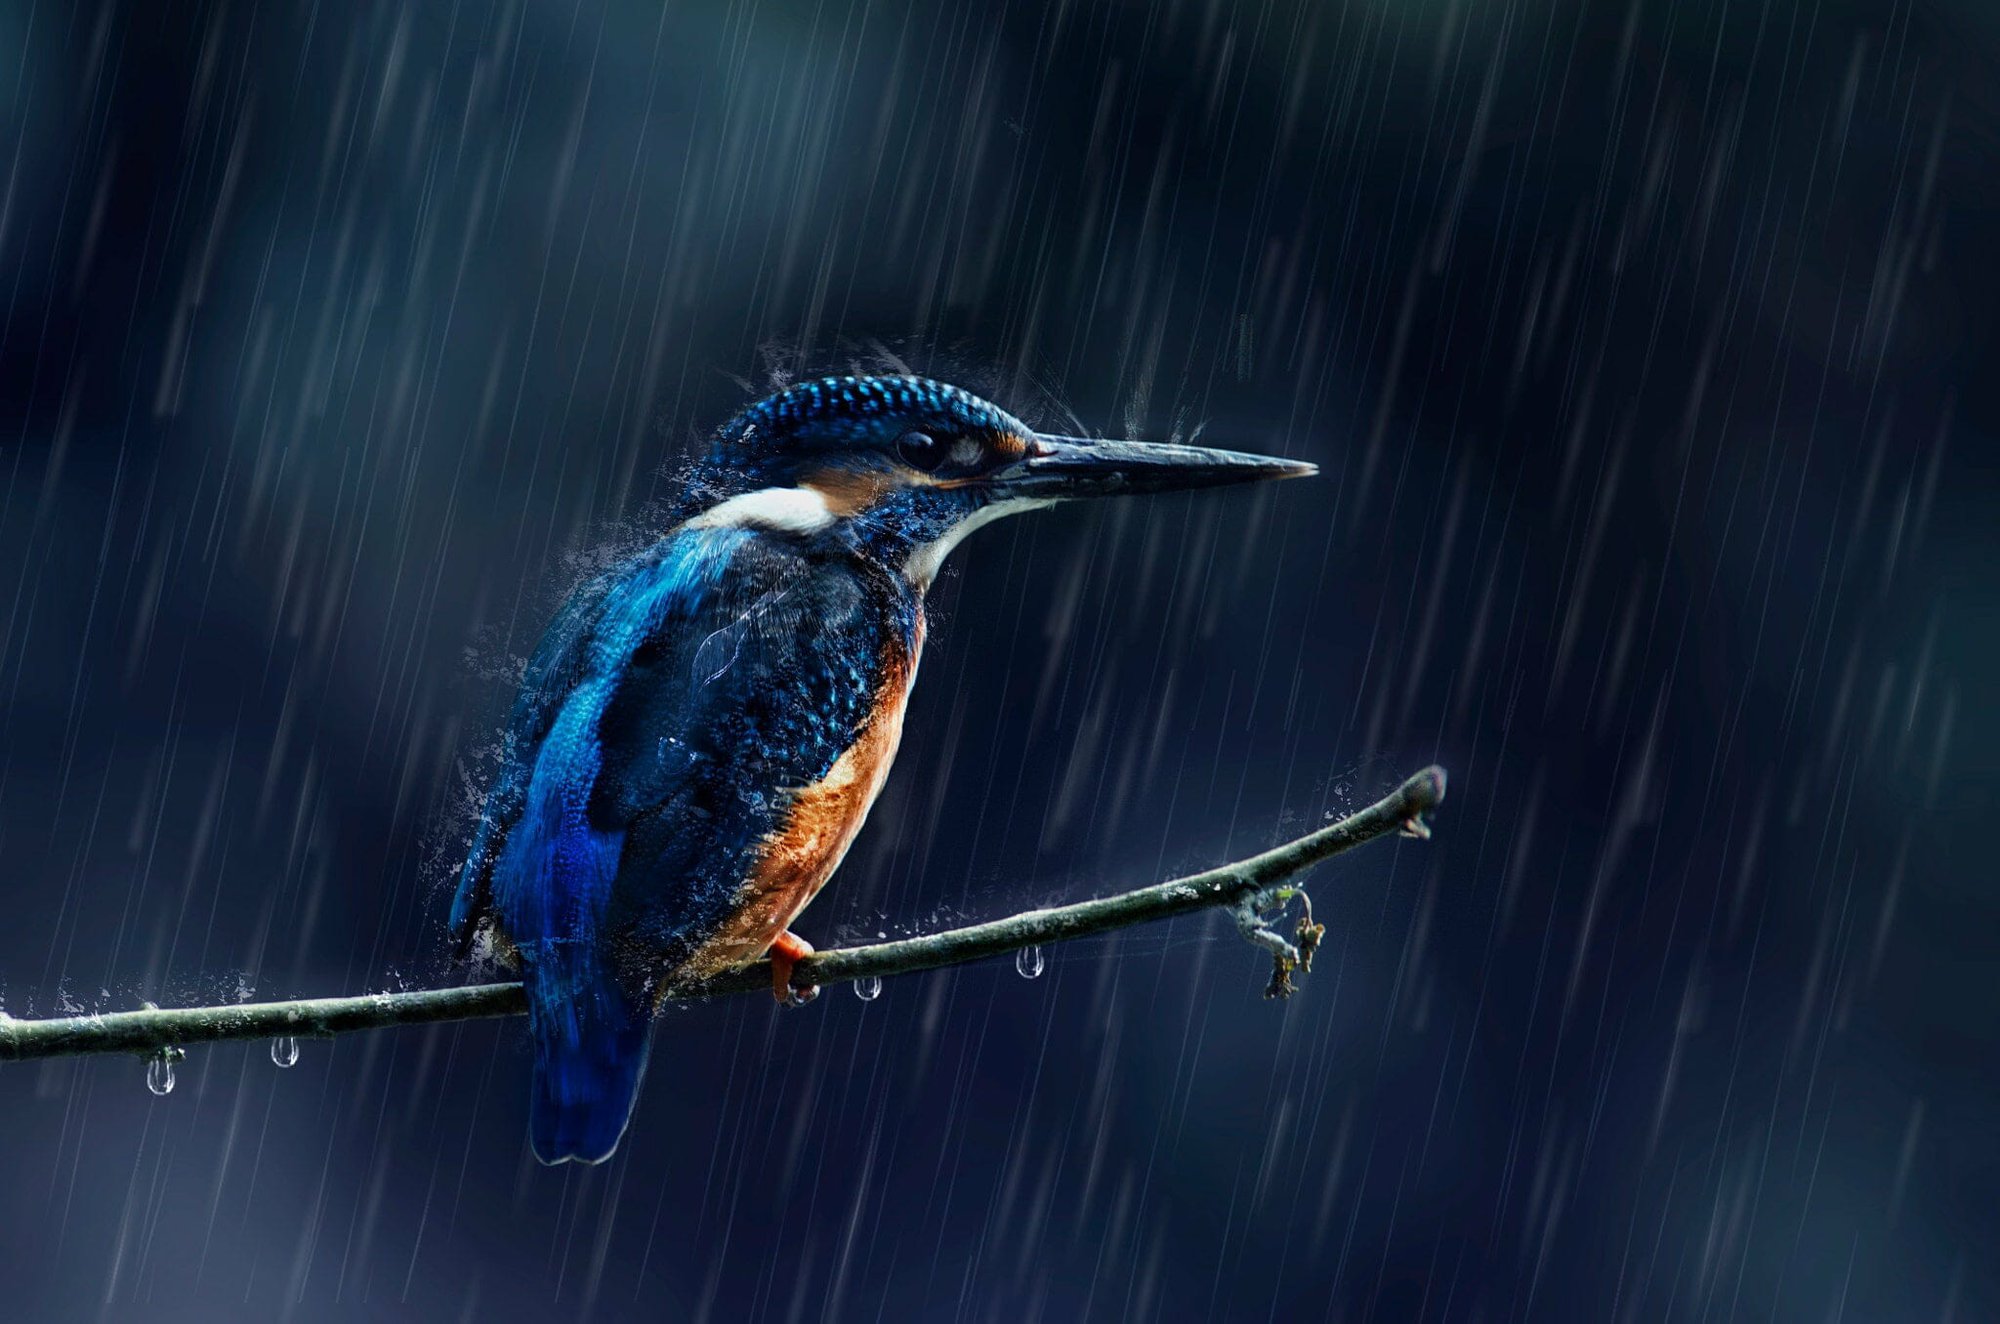 Khi trời mưa, những con chim sẽ trốn mưa ở đâu? - Ảnh 5.